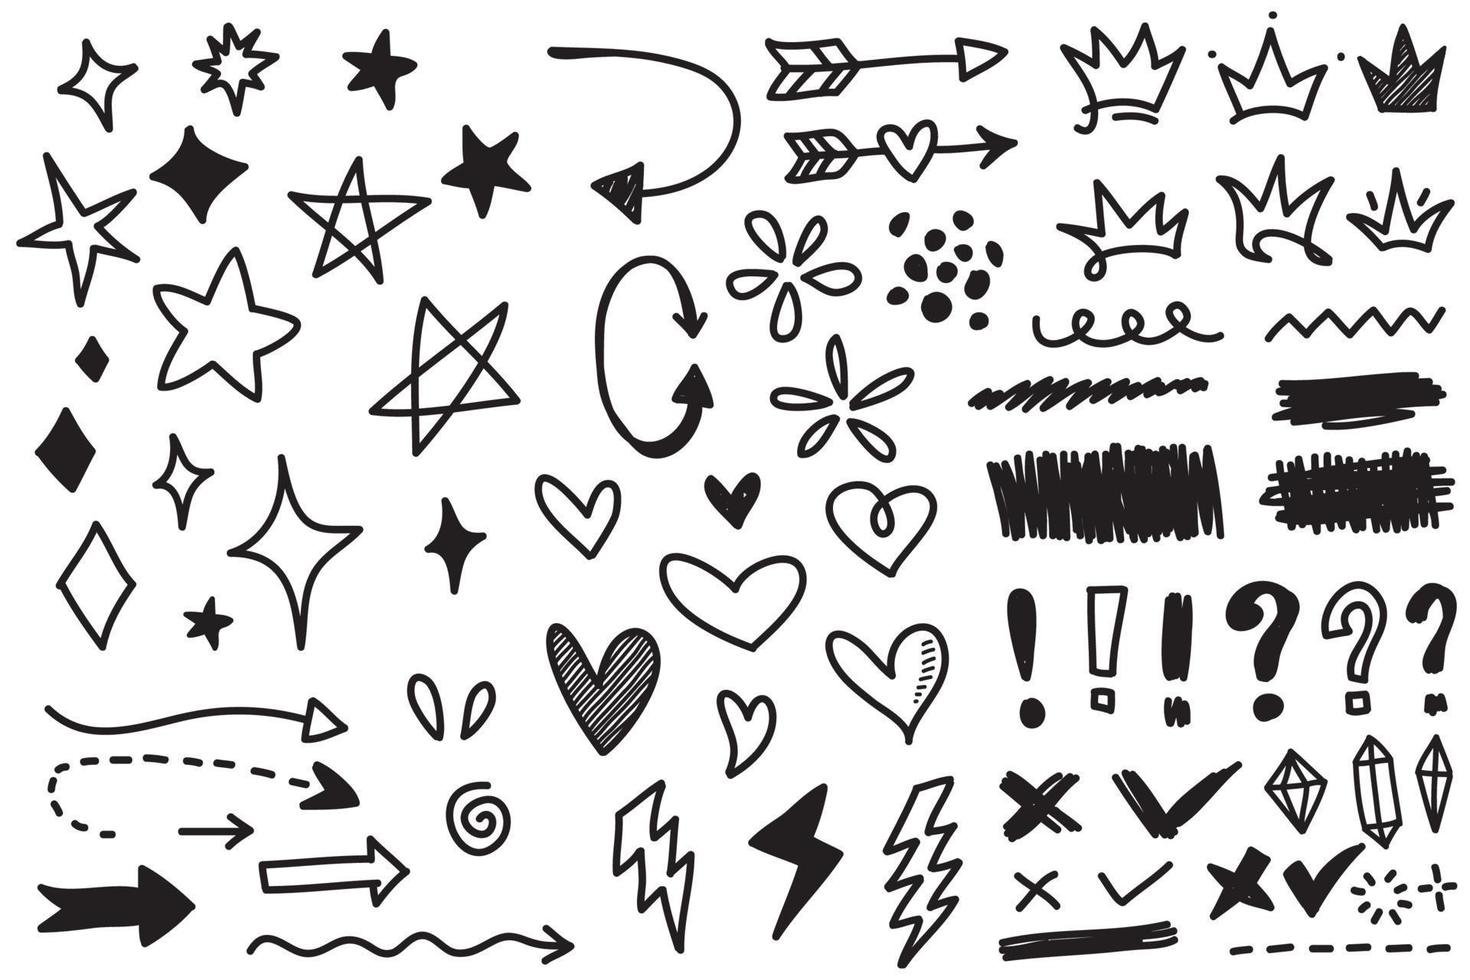 conjunto vetorial de diferentes coroas, corações, estrelas, cristais, brilhos, flechas, raios, diamantes, sinais e símbolos. mão desenhada, elemento doodle isolado em um fundo branco. vetor